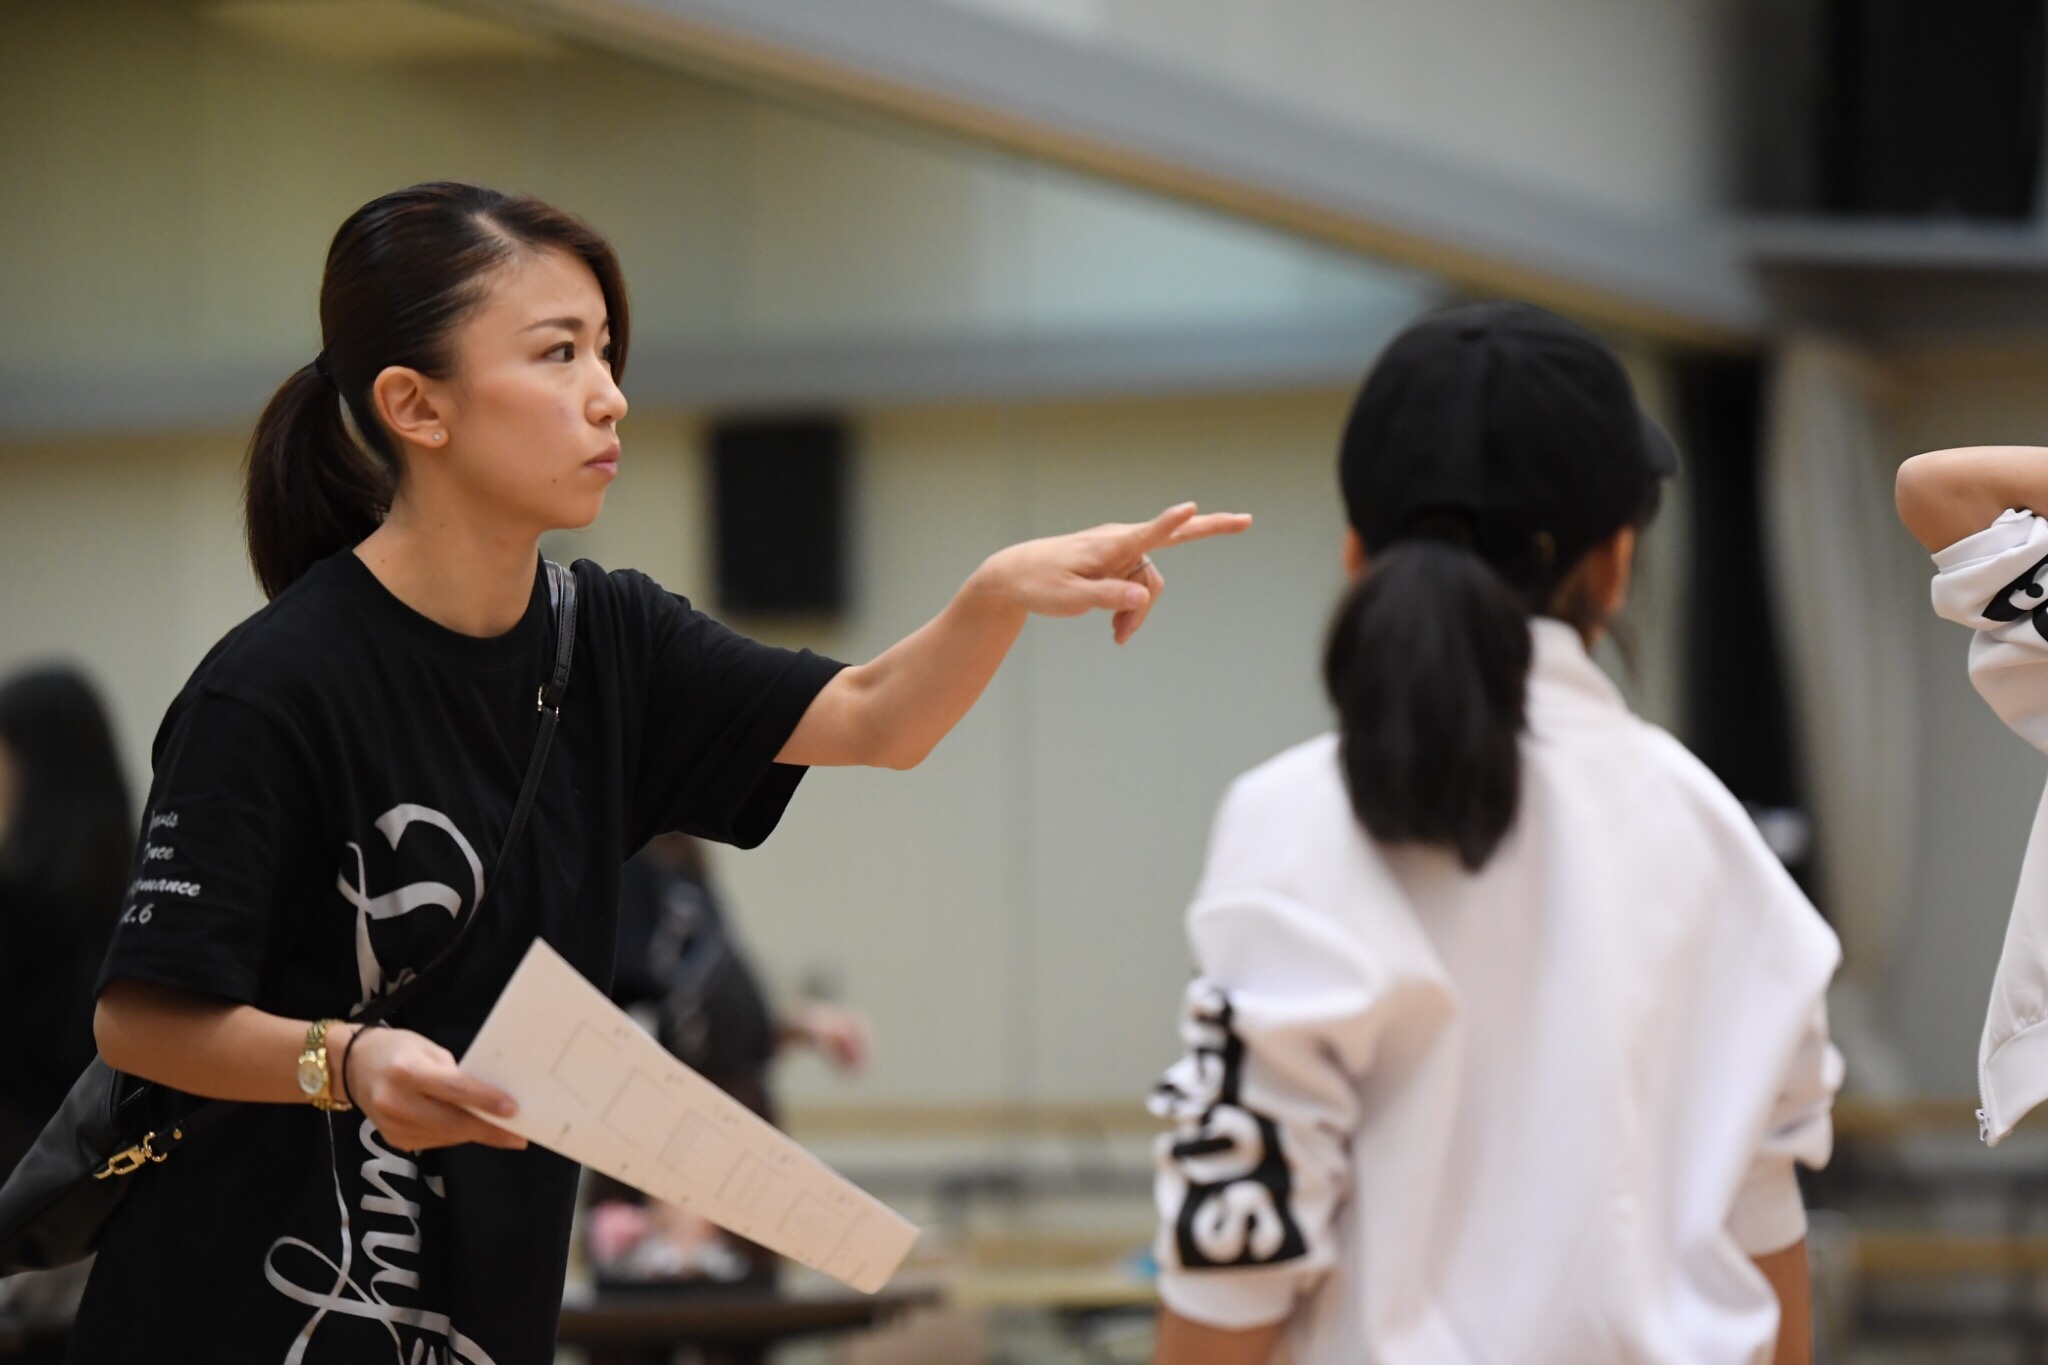 振り作り 振り付け の仕方 Gravis 神奈川 東京で人気のチア キッズチアダンススクール